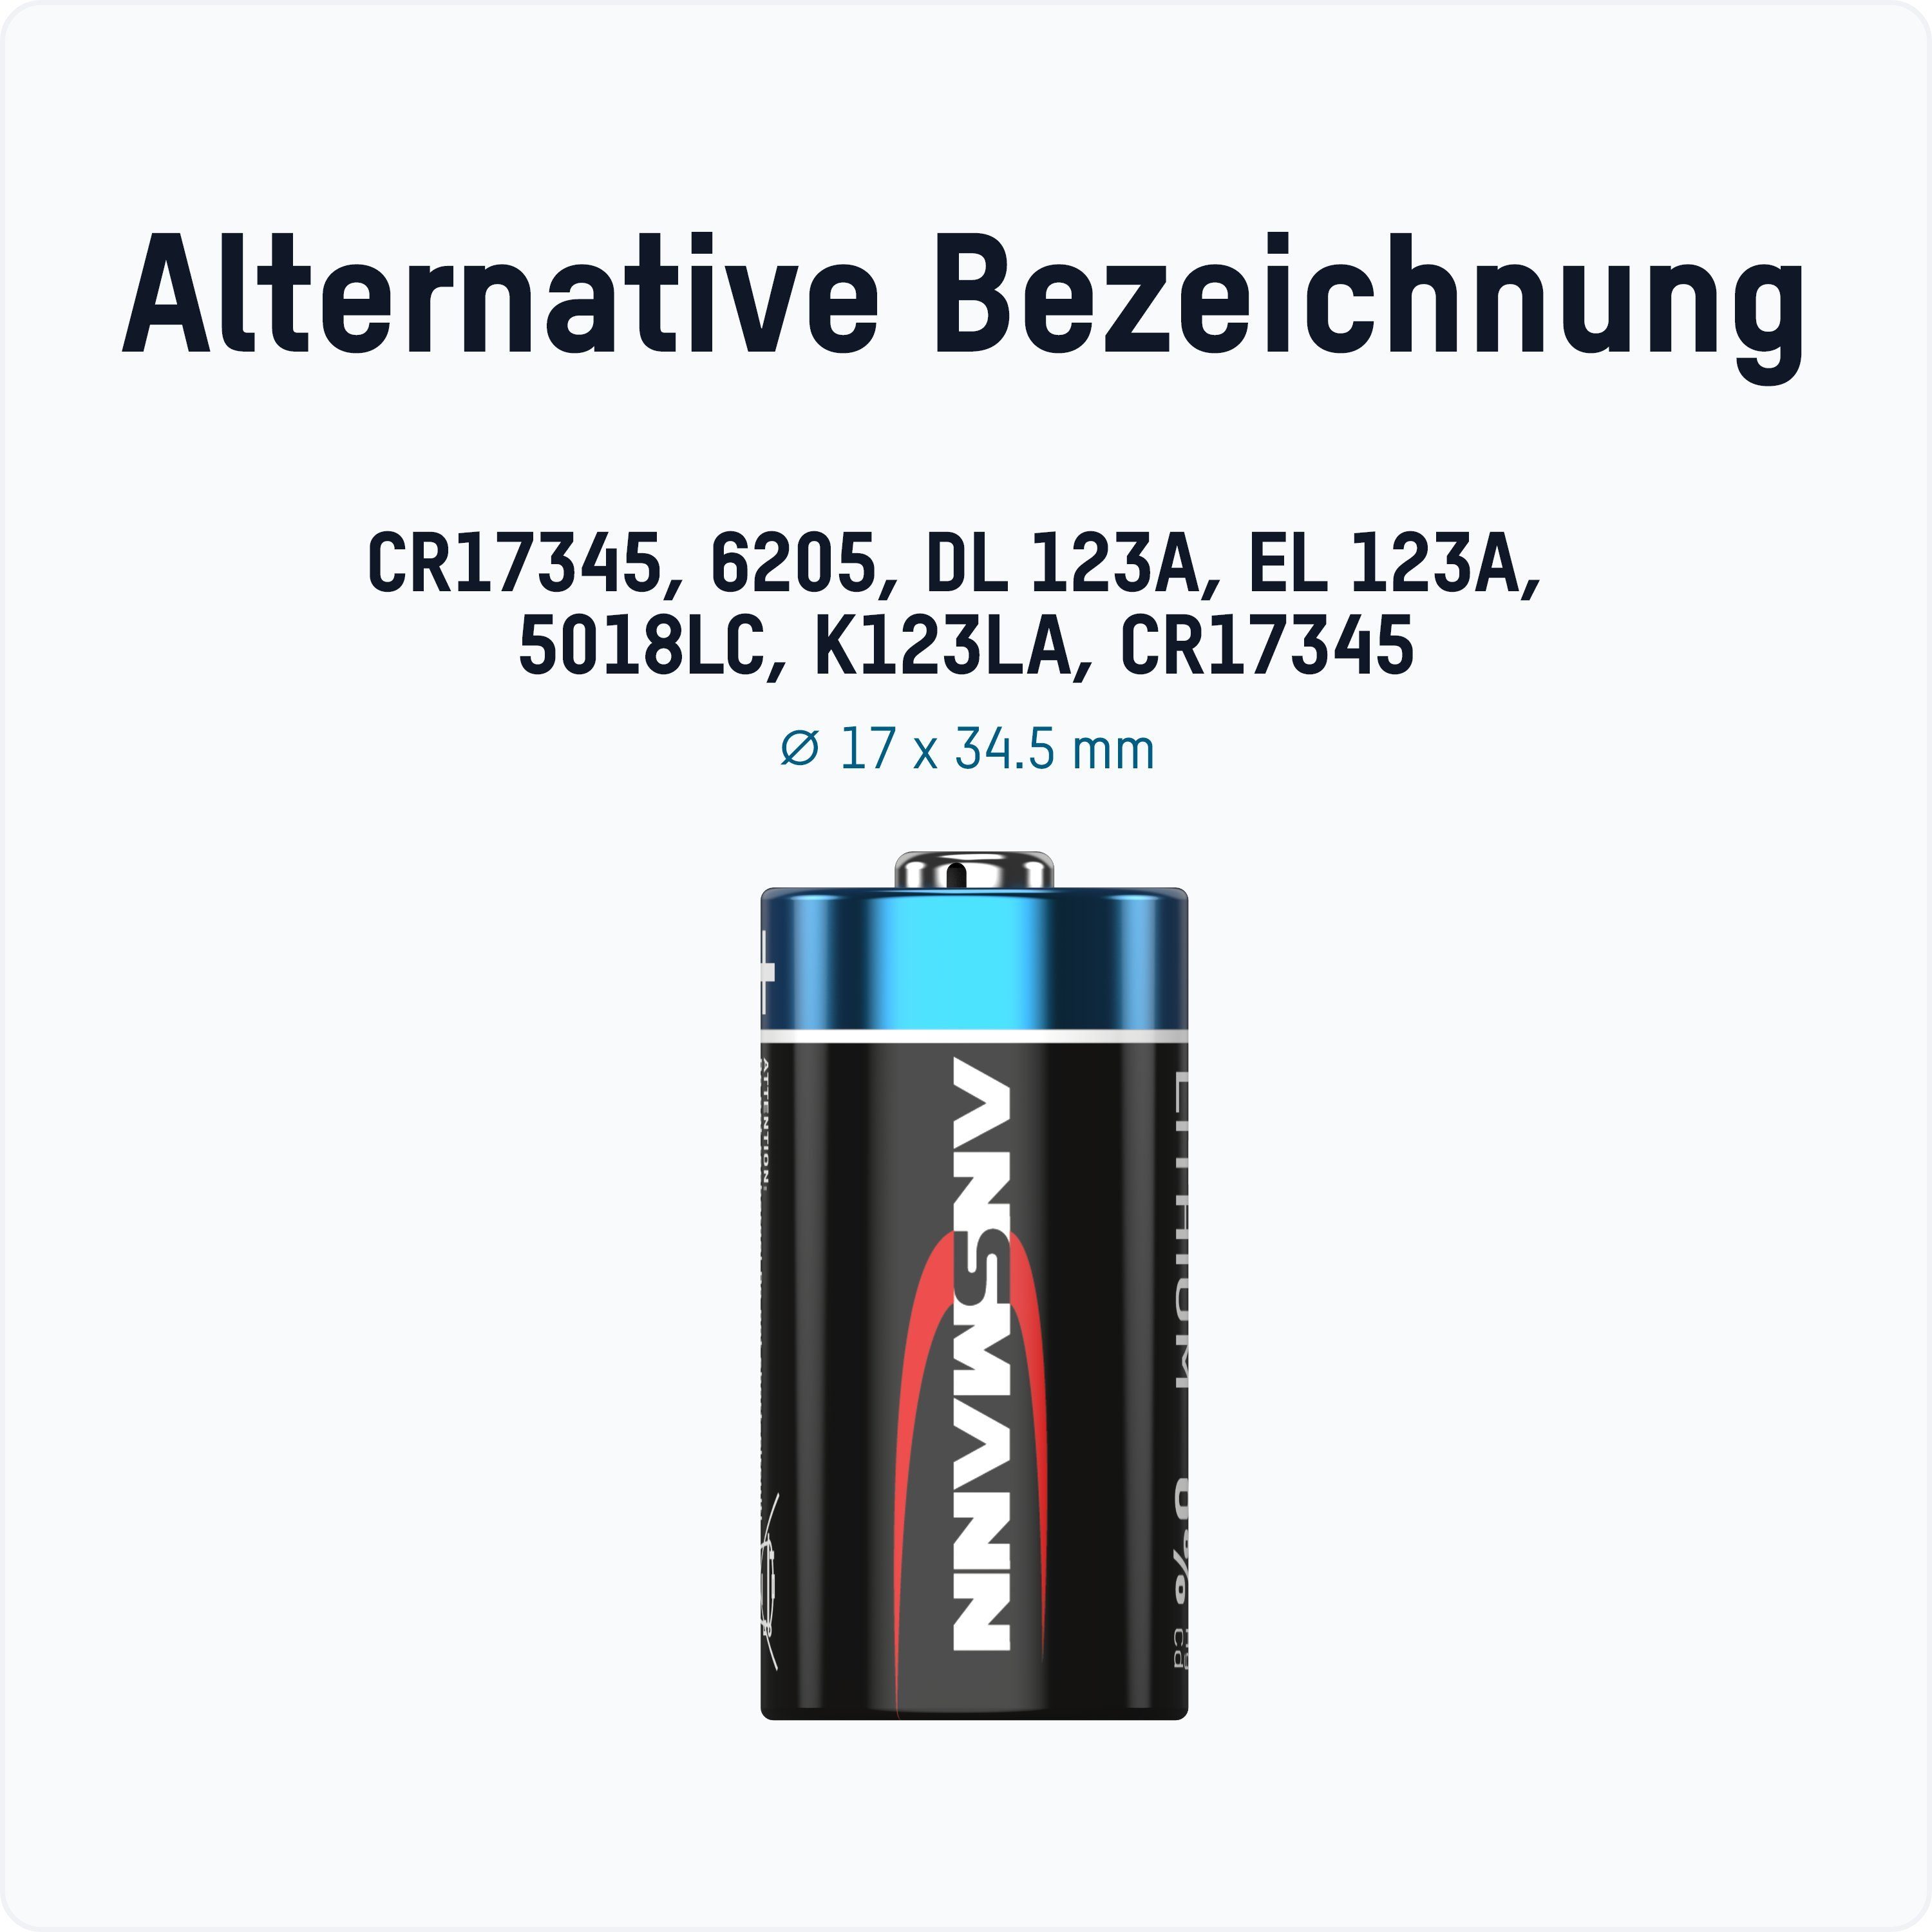 ANSMANN® 8x CR123A 3V Lithium (8 Batterie Batterie Stück) Hochleistungsbatterie 